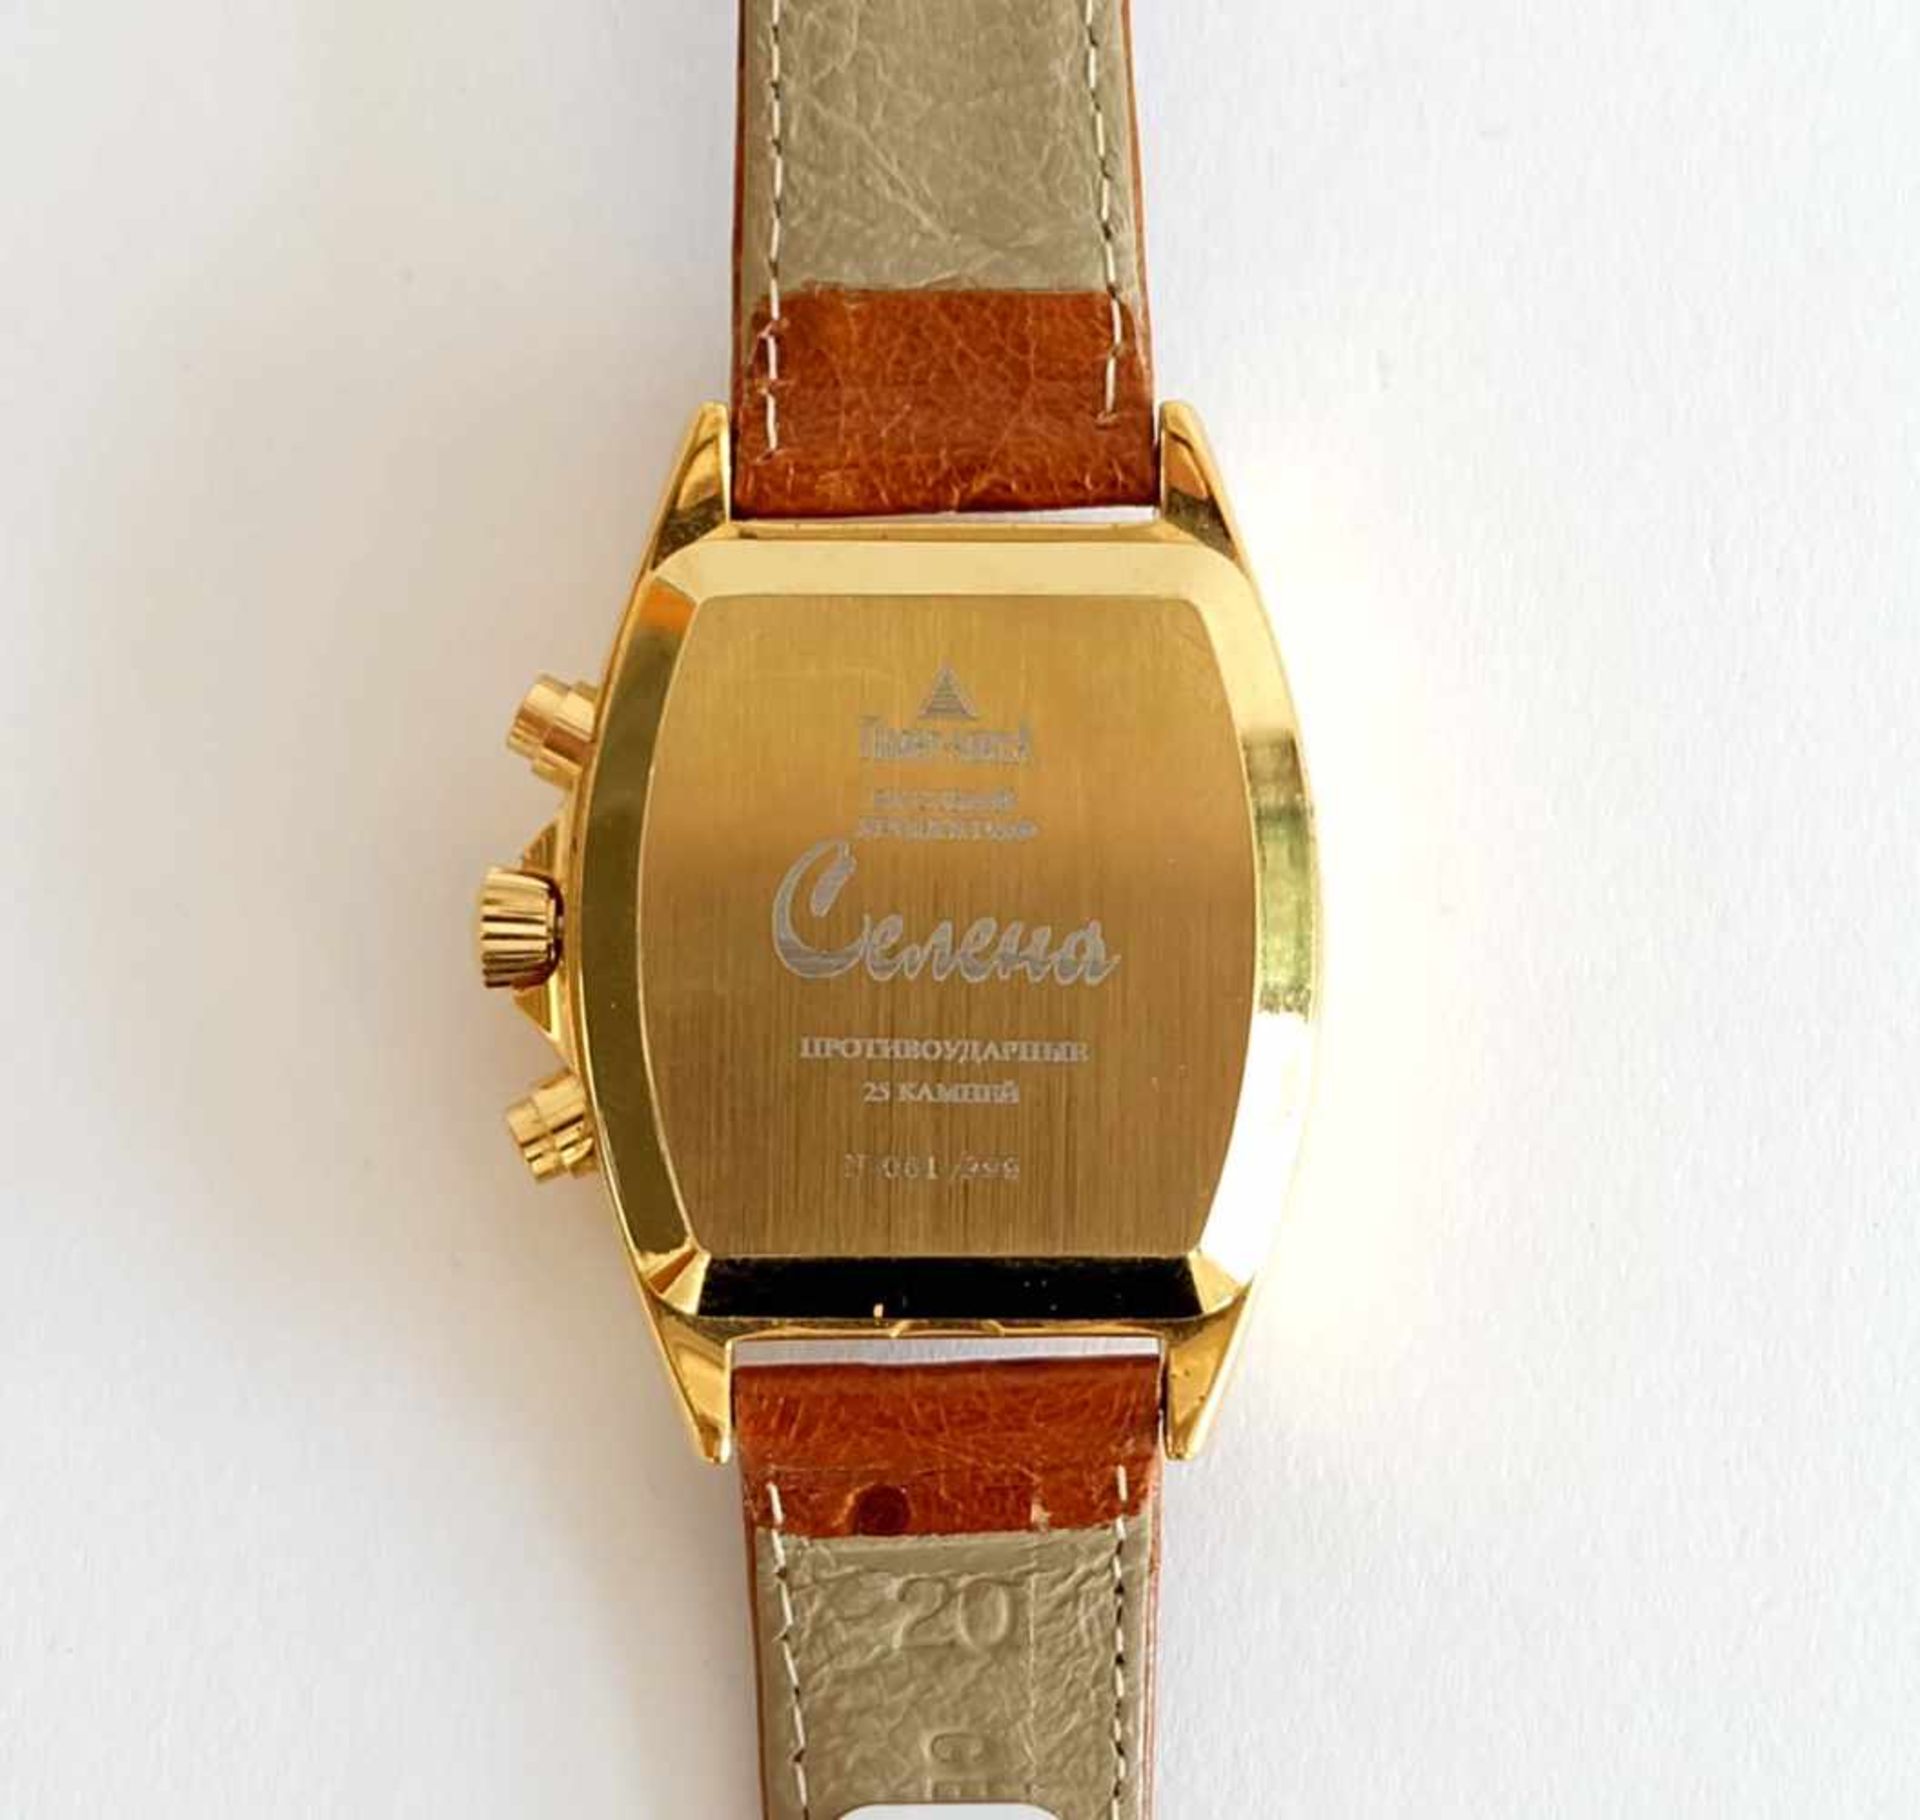 HAU, Hersteller Serena/ Rußland, Automatic, Chronograph, vergoldedetes Edelstahlgehäuse, - Bild 2 aus 2